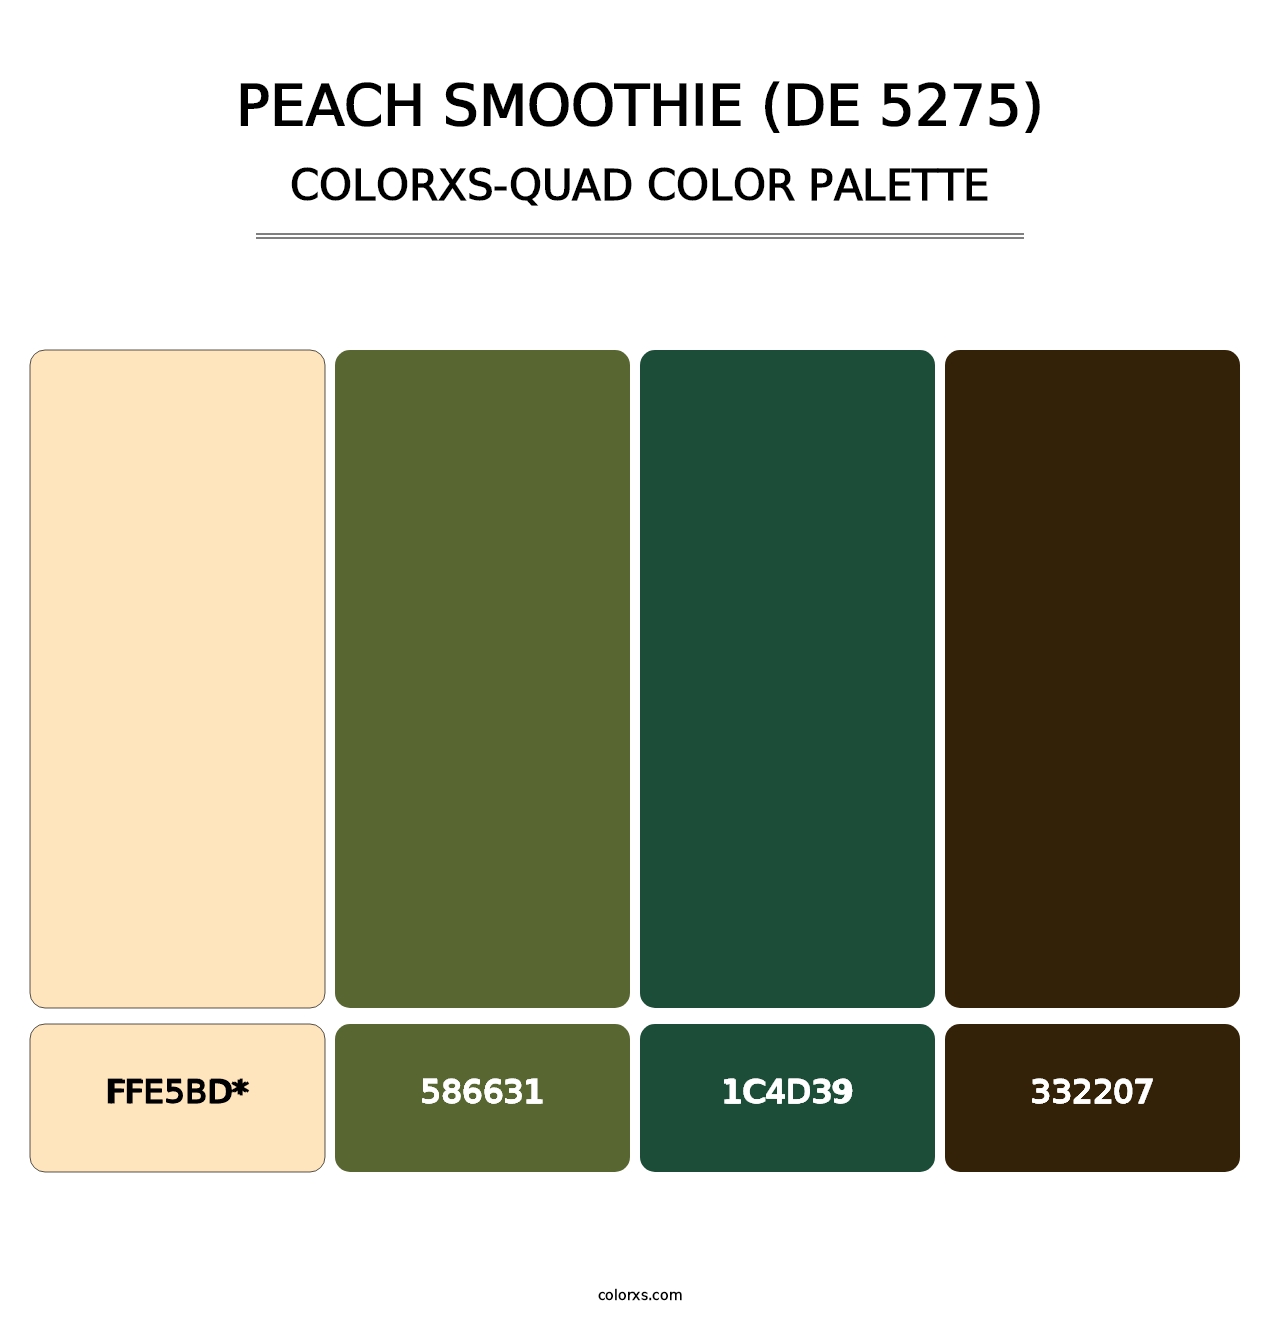 Peach Smoothie (DE 5275) - Colorxs Quad Palette